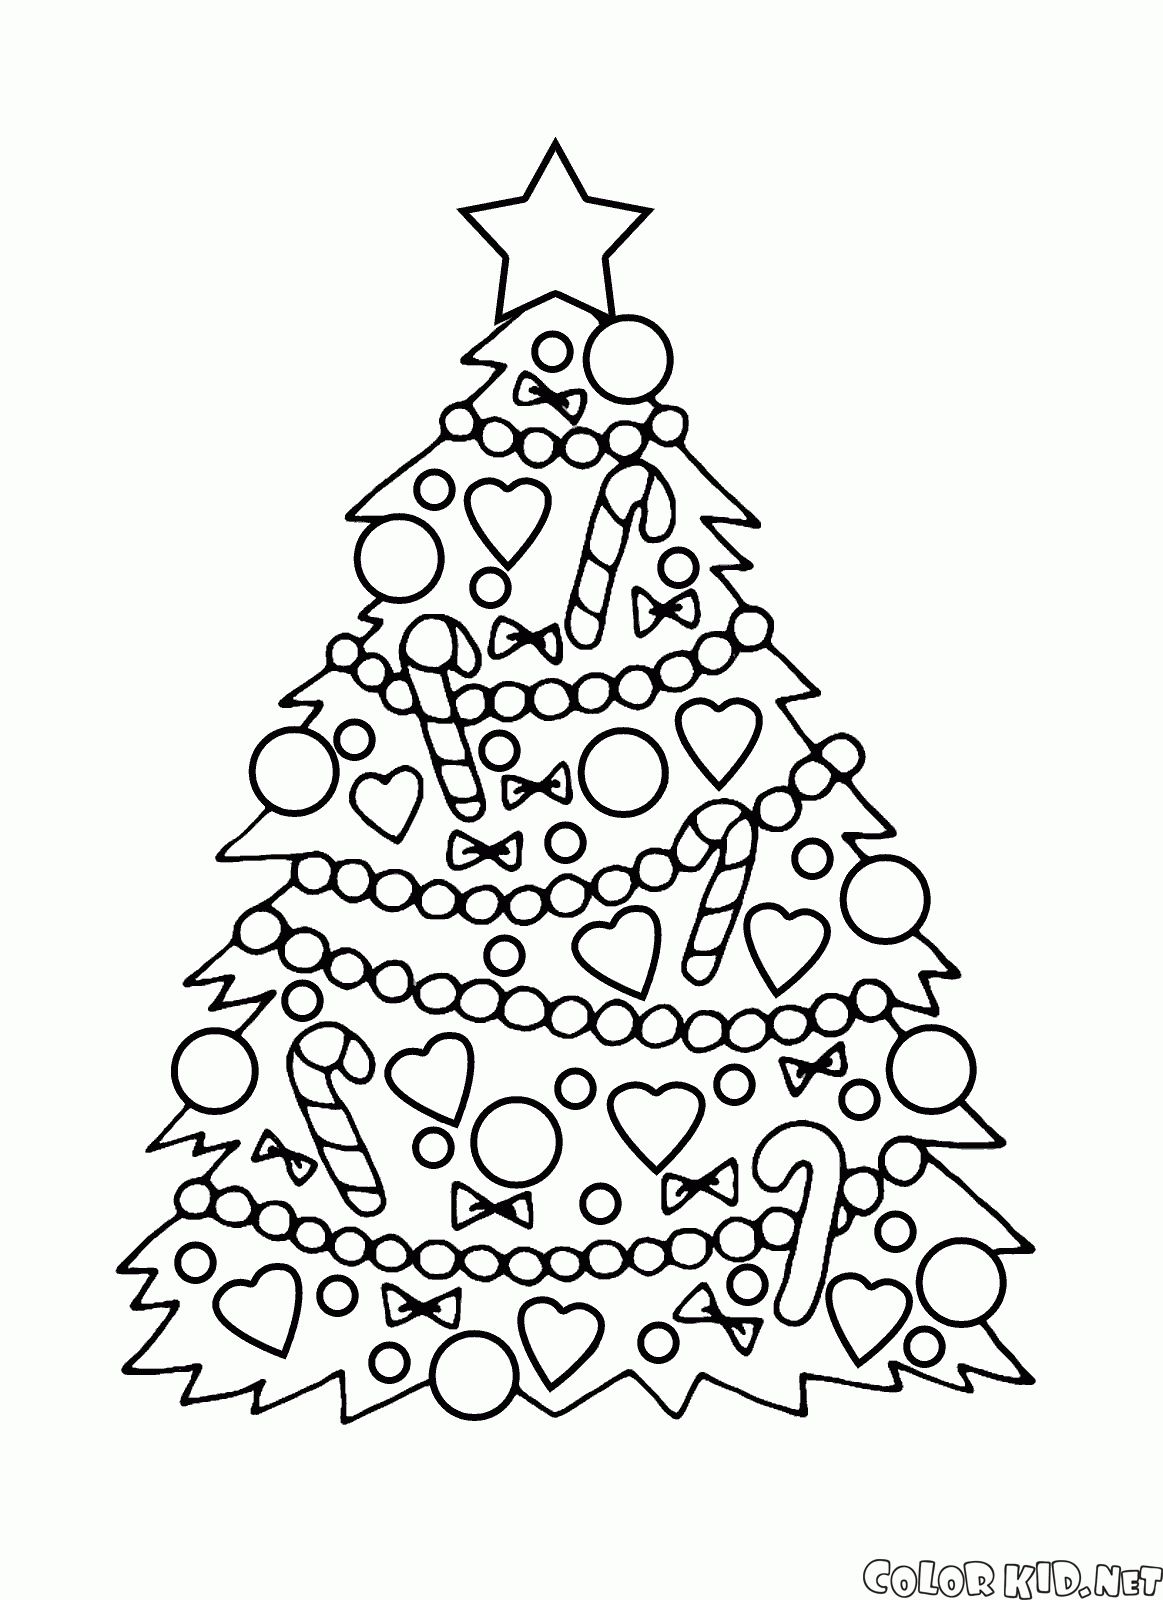 Disegni Alberi Di Natale Da Stampare.Disegni Da Colorare Albero Di Natale Con Decorazioni